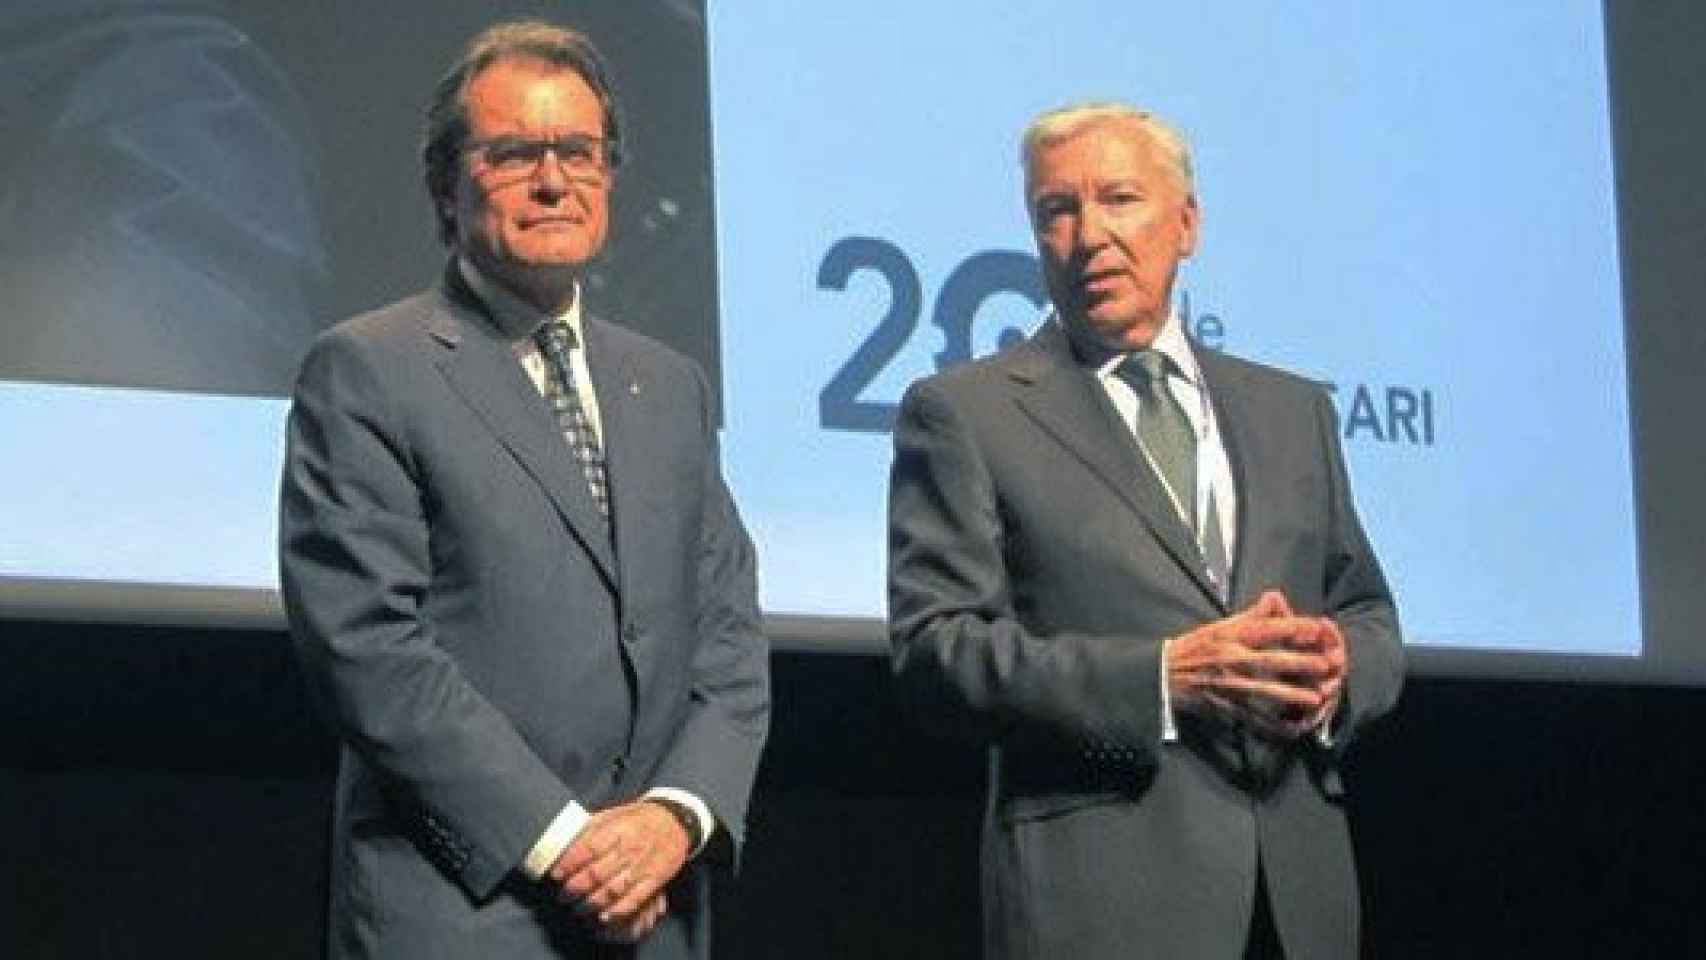 El presidente de la Generalitat, Artur Mas (izquierda), junto al líder de Cecot, Antoni Abad (derecha), en una imagen de archivo